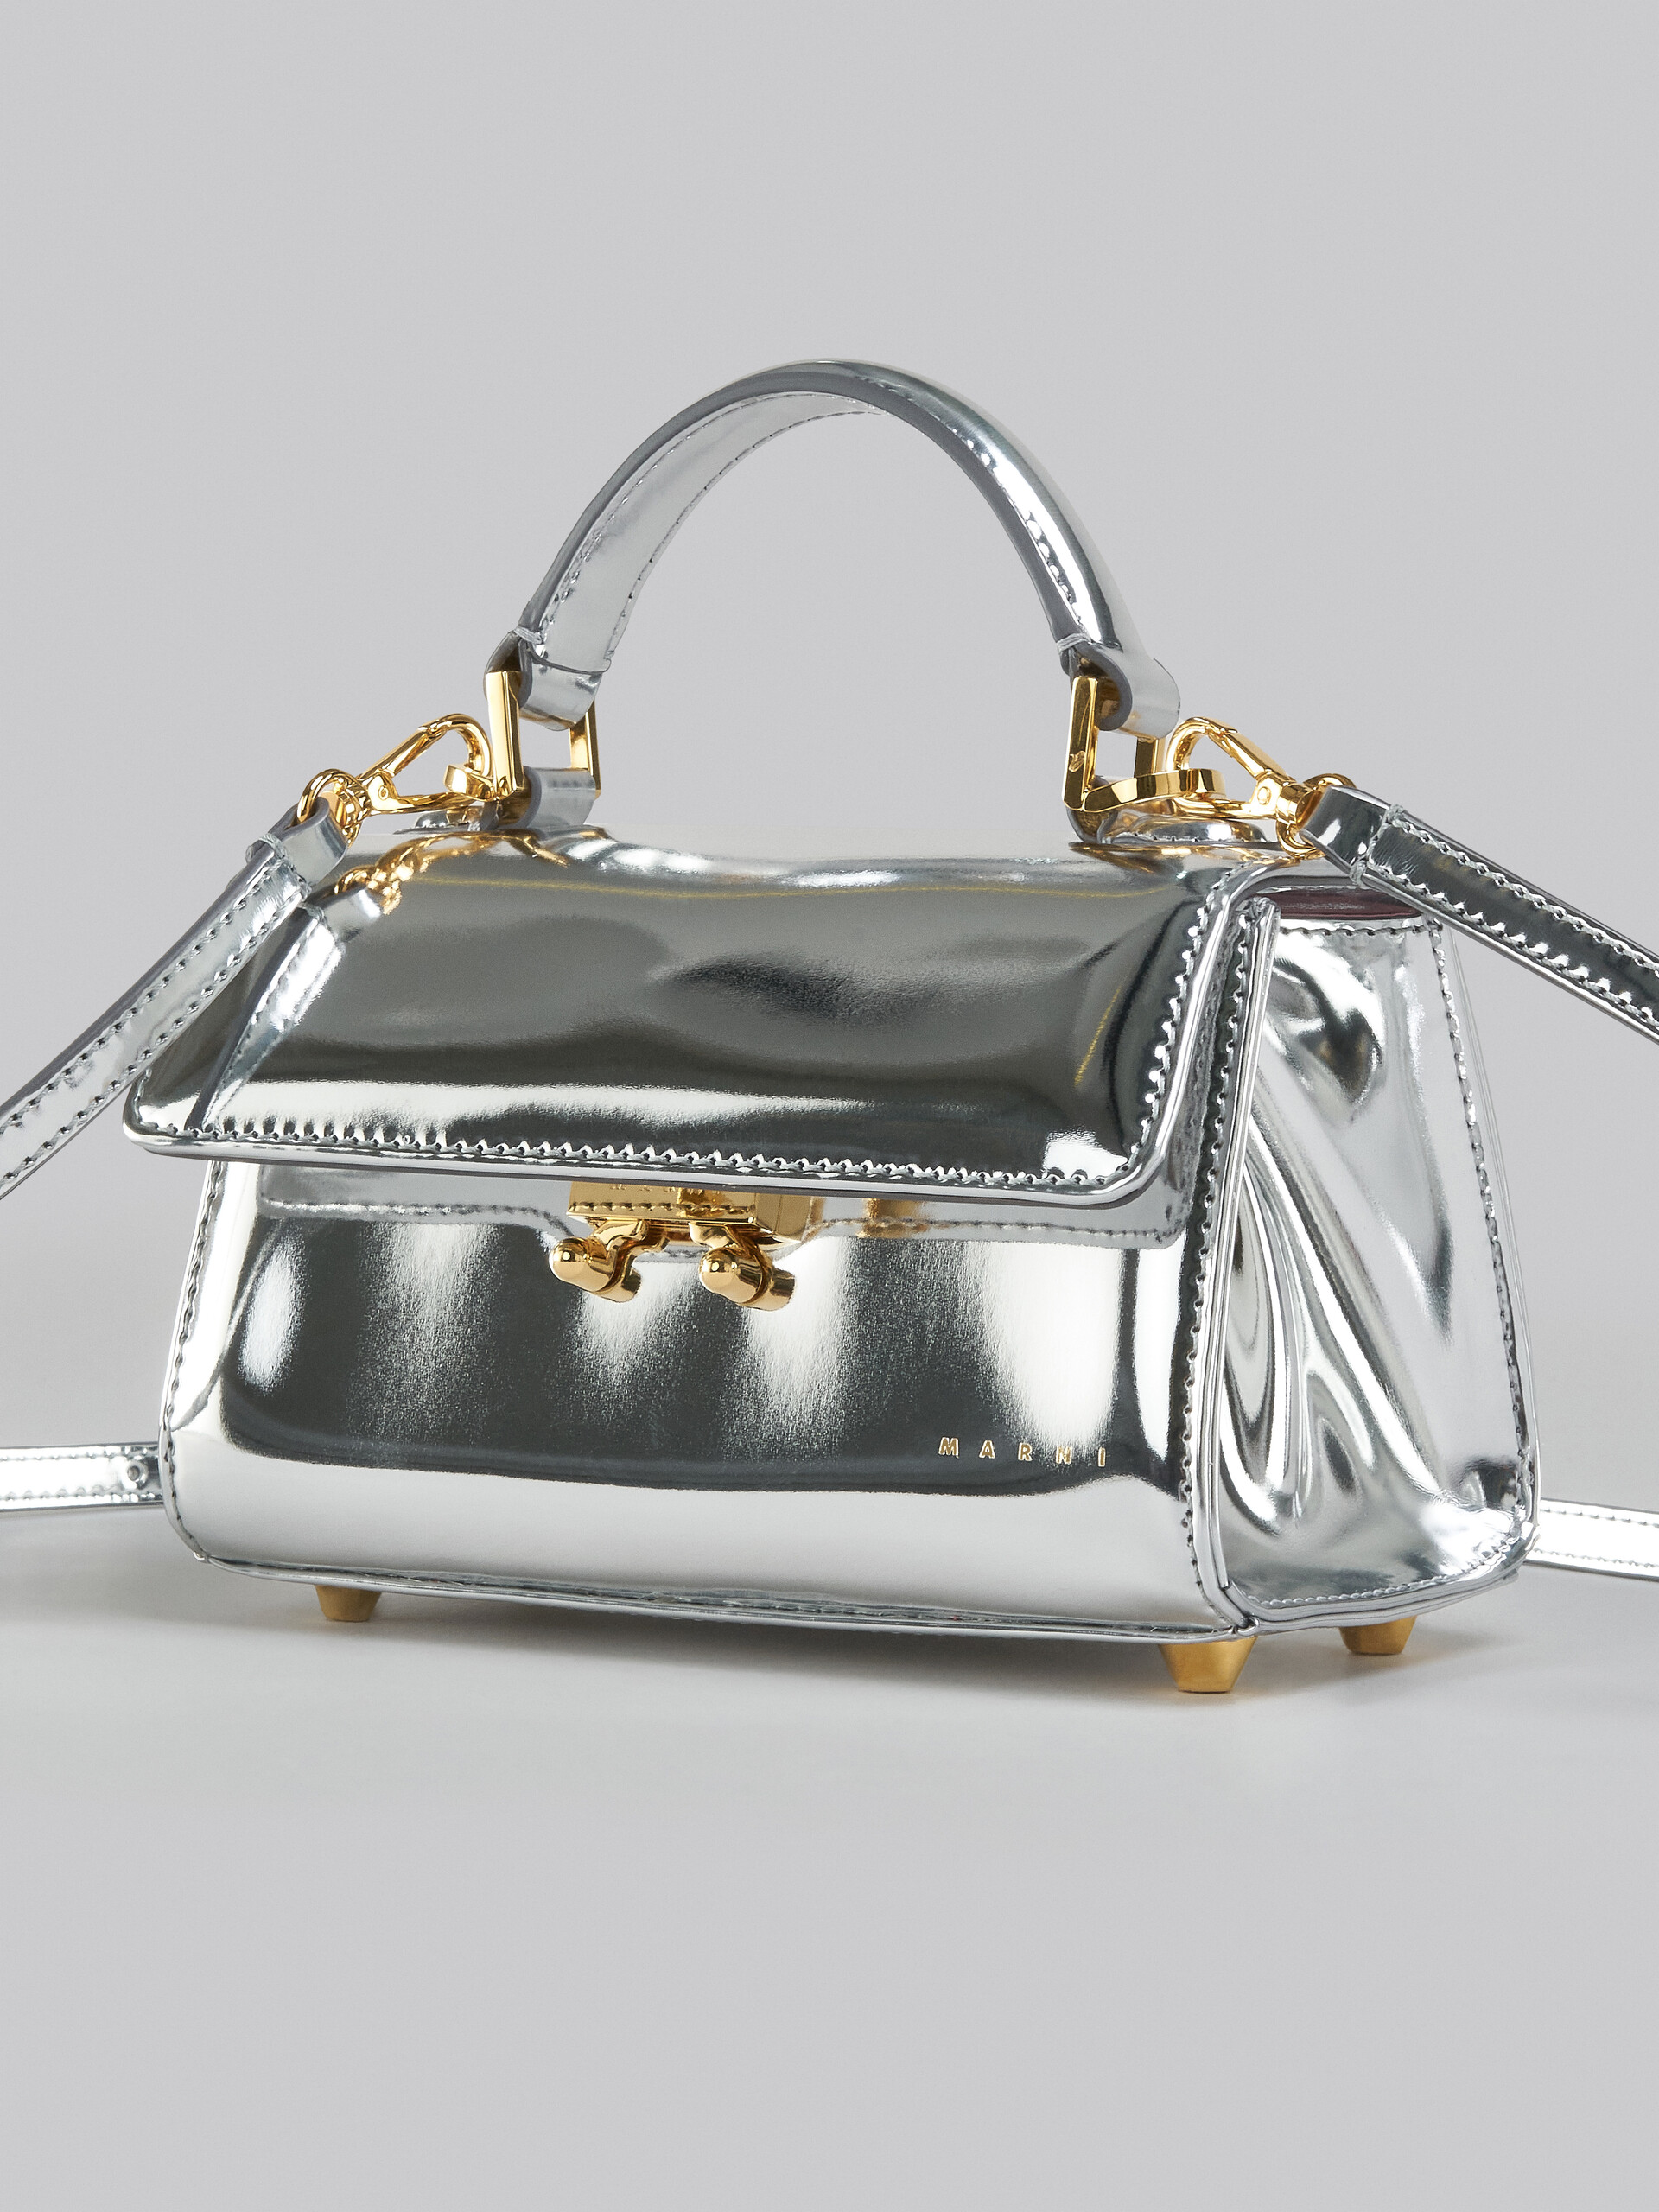 Relativity Bag Mini in pelle specchiata argento - Borse a mano - Image 5